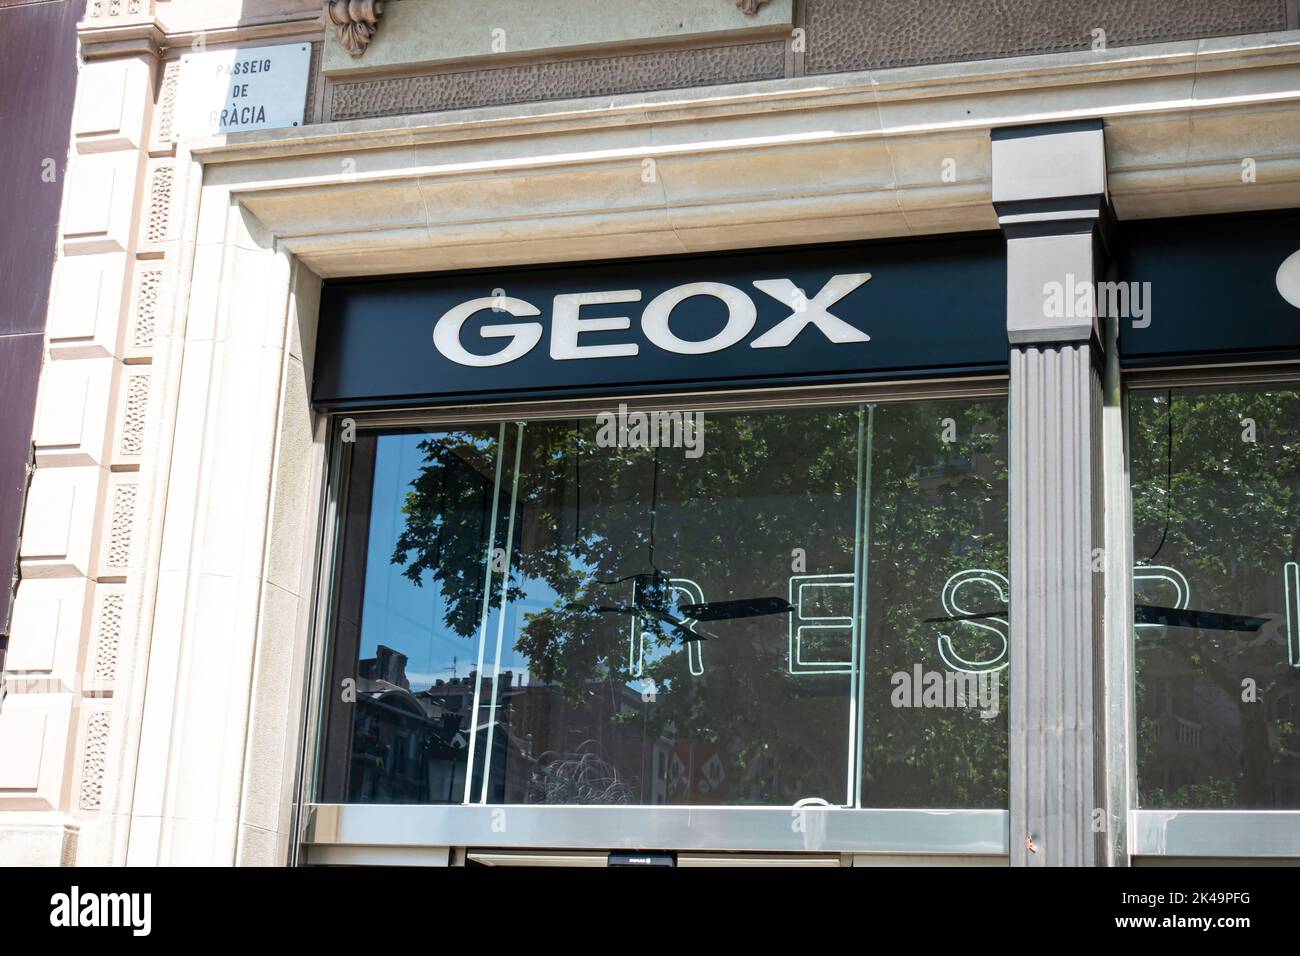 Barcellona, Spagna - 9 maggio 2022: Negozio GEOX. Geox è un marchio italiano di scarpe e abbigliamento. Foto Stock